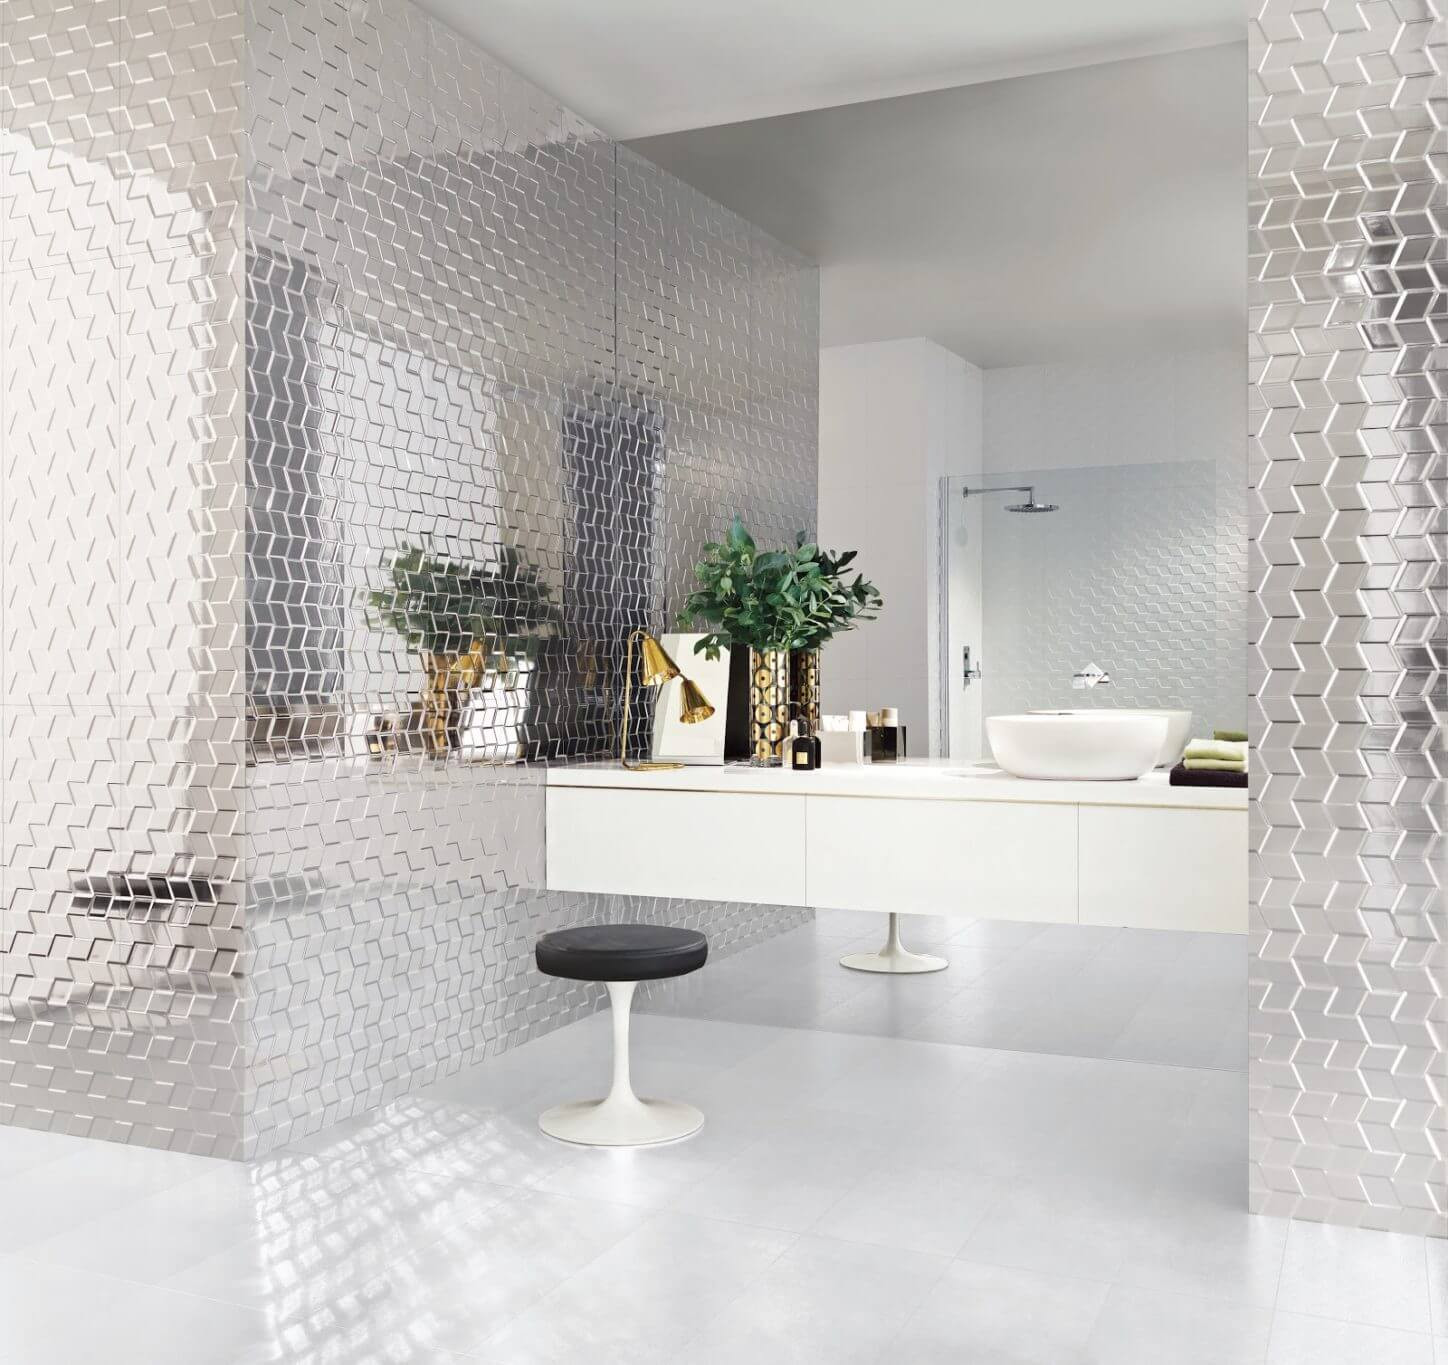 Bathroom Ceramic Floor Tile Ideas
 40 Free Shower Tile Ideas Tips For Choosing Tile